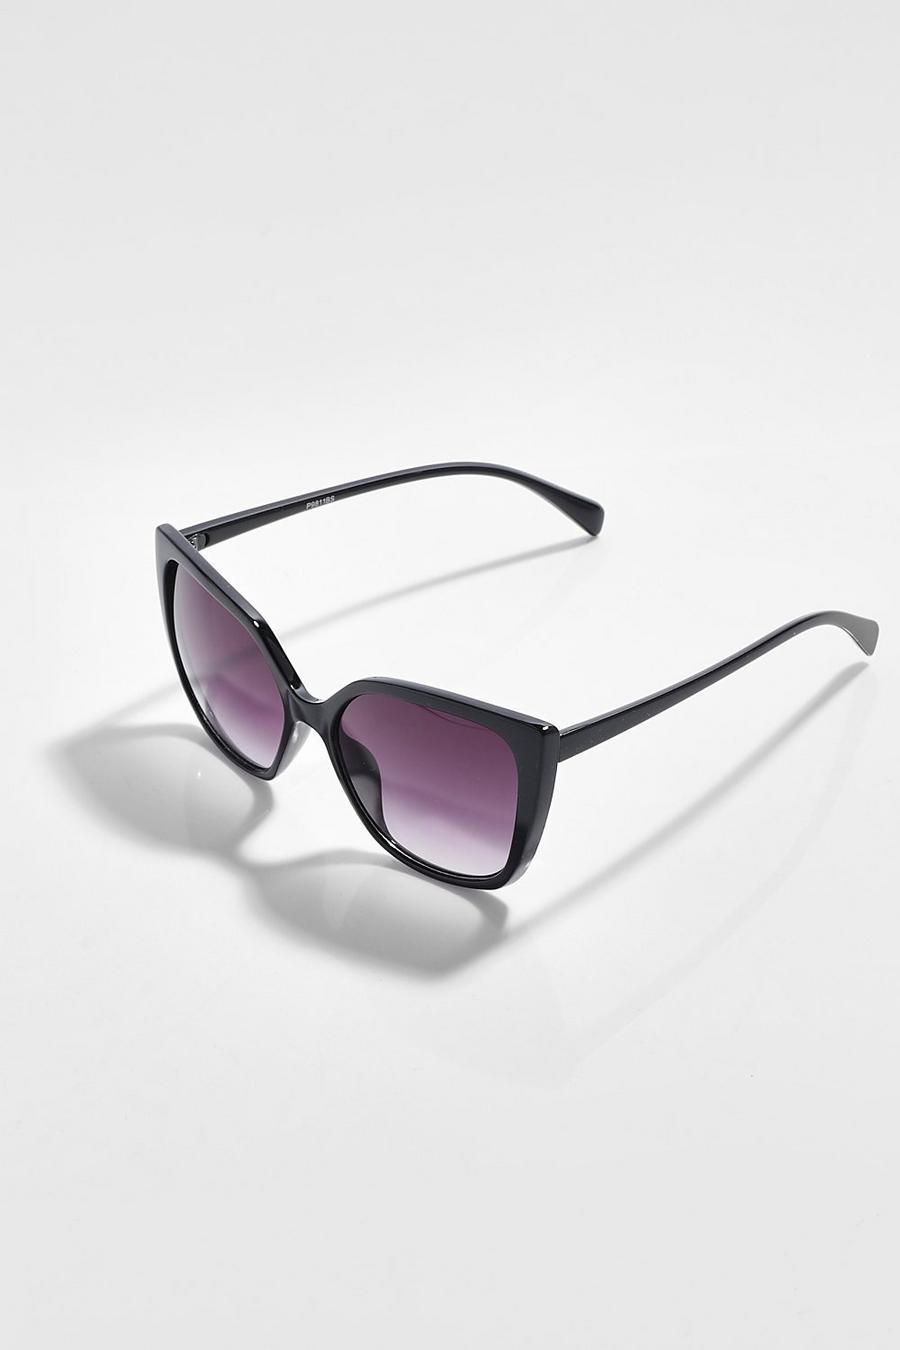 Black noir Oversized Cat Eye Sunglasses Gradient Lens